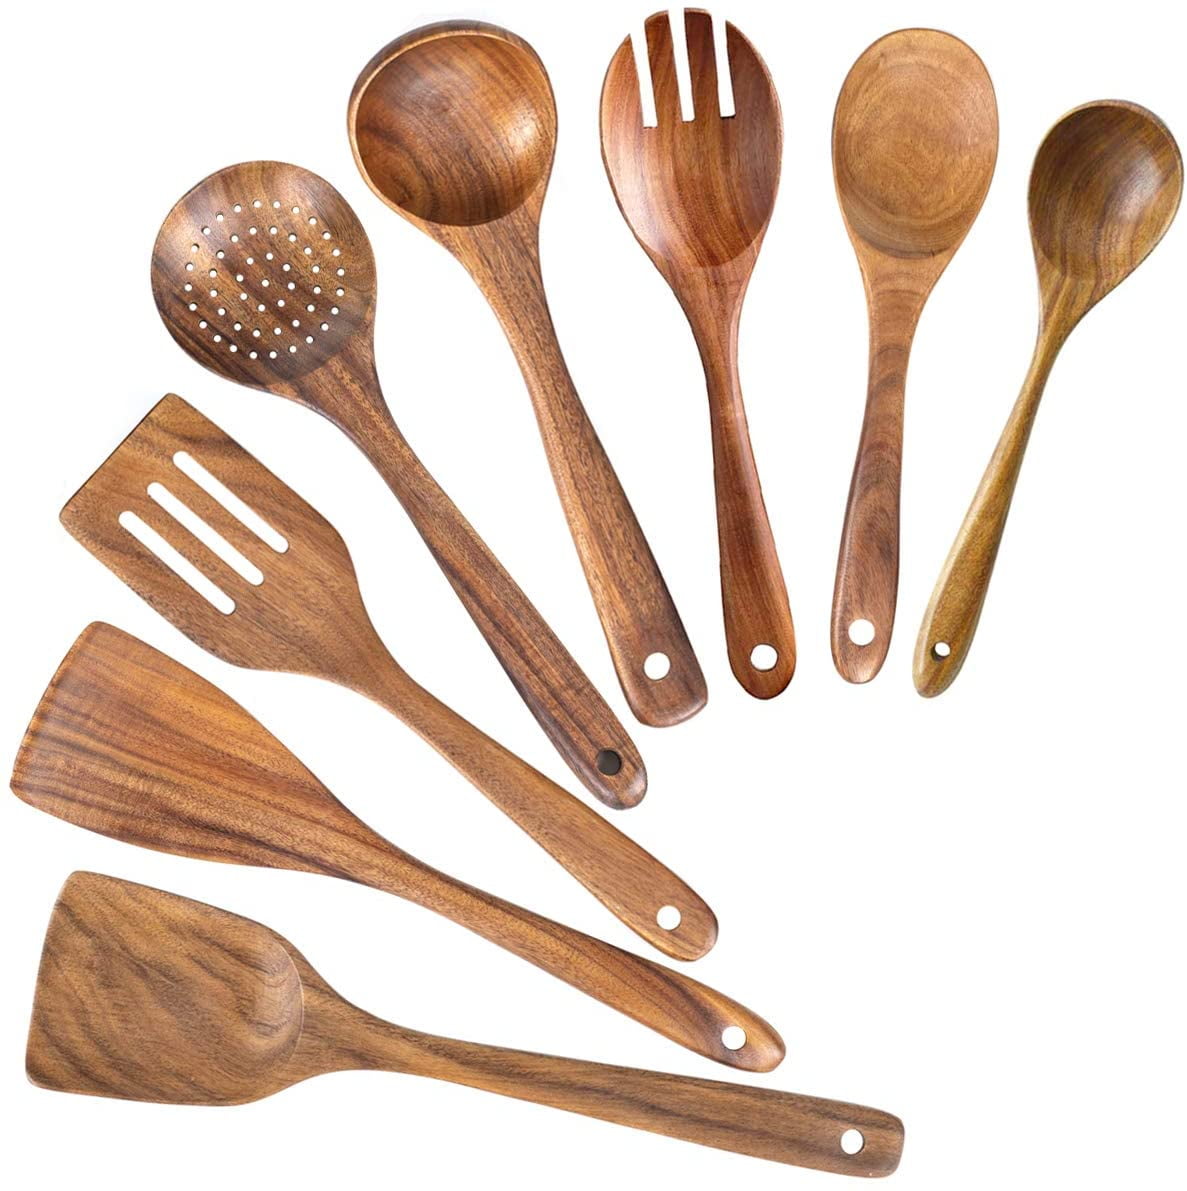 Wooden Kitchen Utensils Set, Wooden Spoons for Cooking – 8 Pcs Wood Cooking  Utenstils – Durable Teak…See more Wooden Kitchen Utensils Set, Wooden